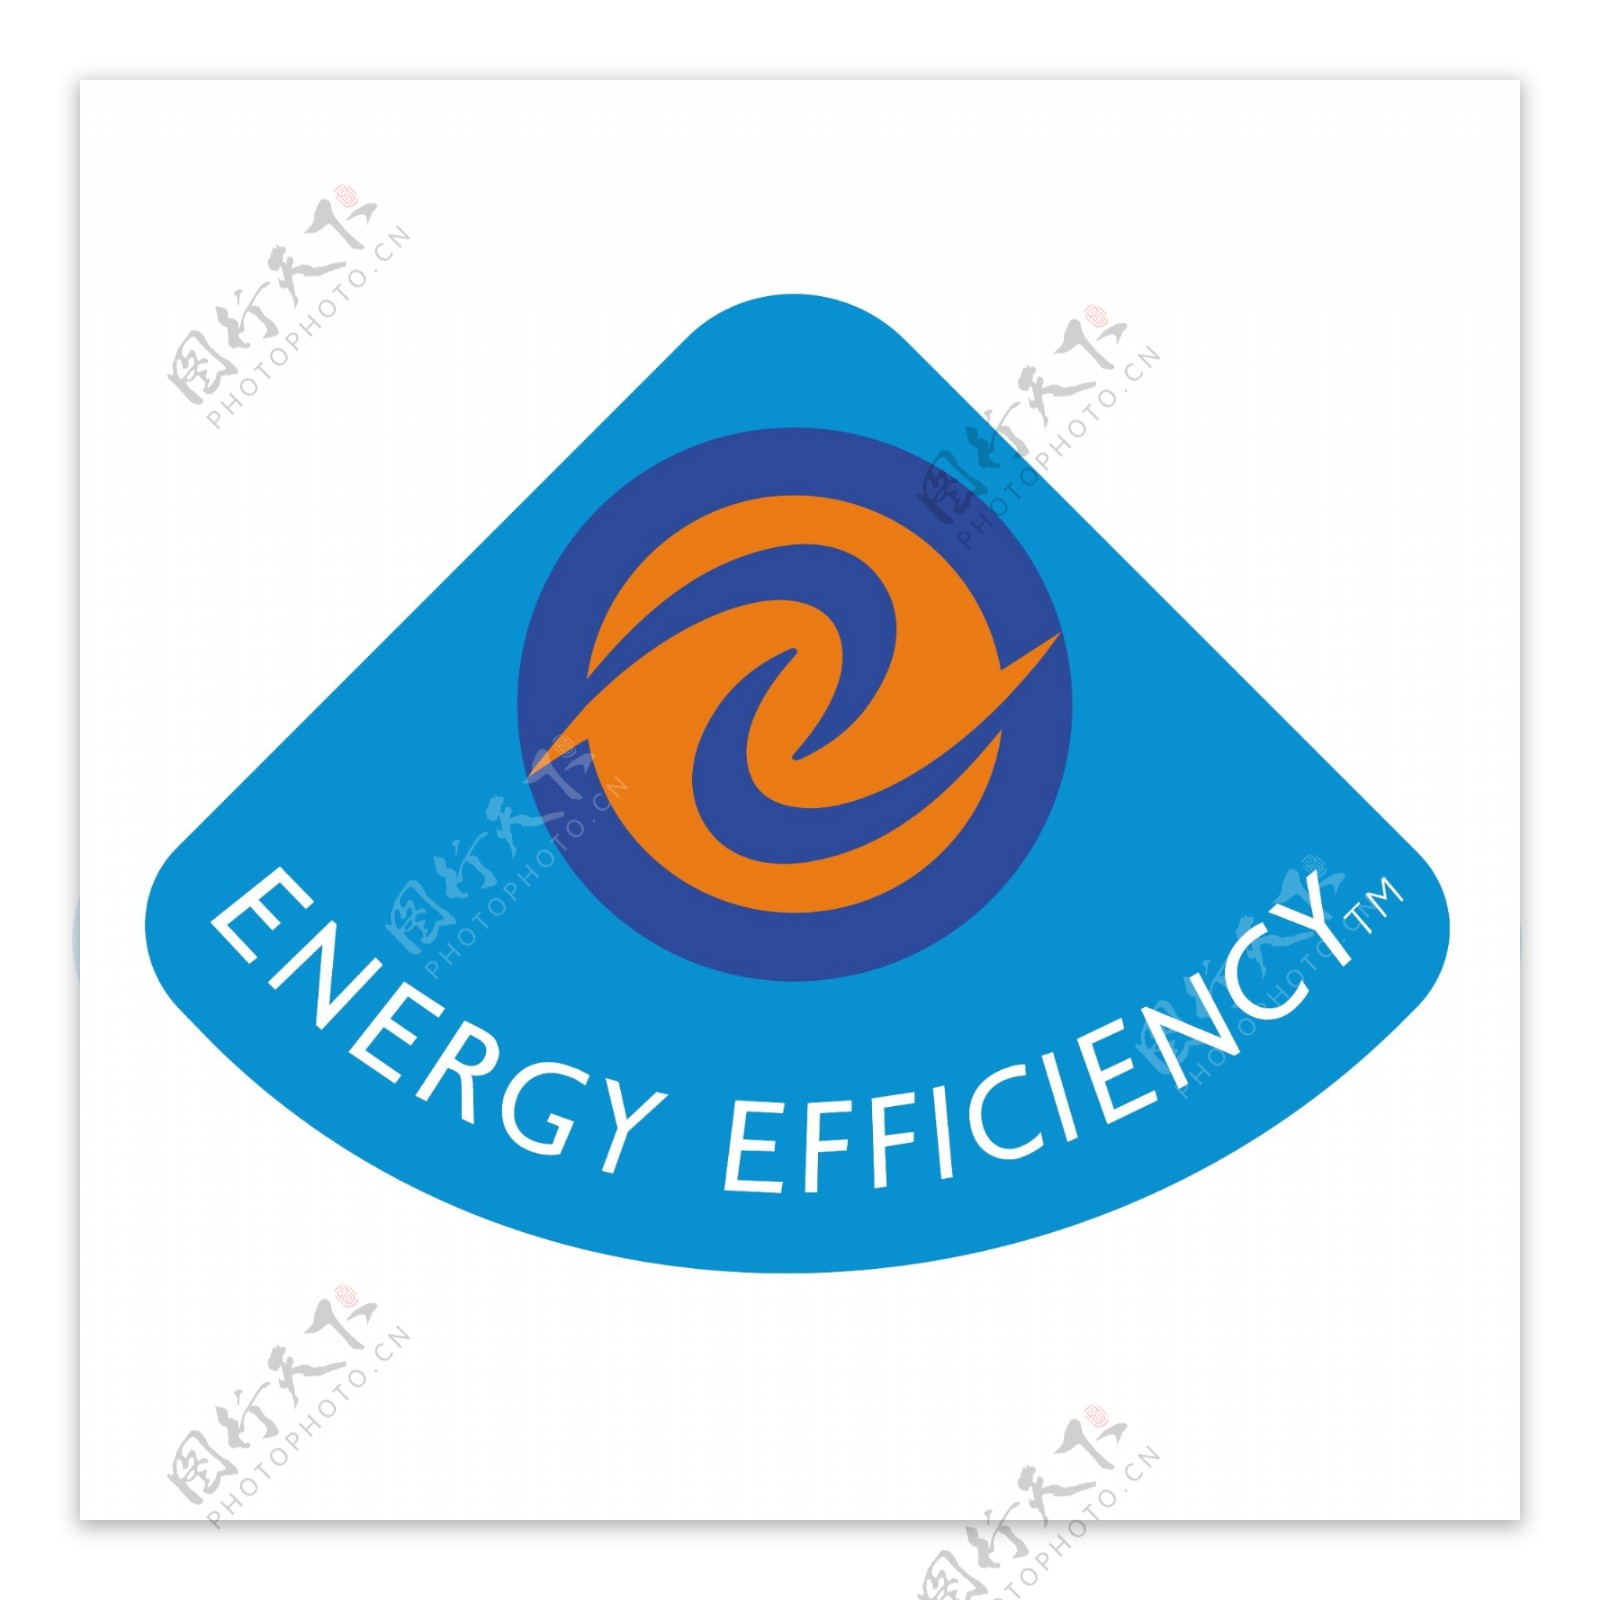 能源效率